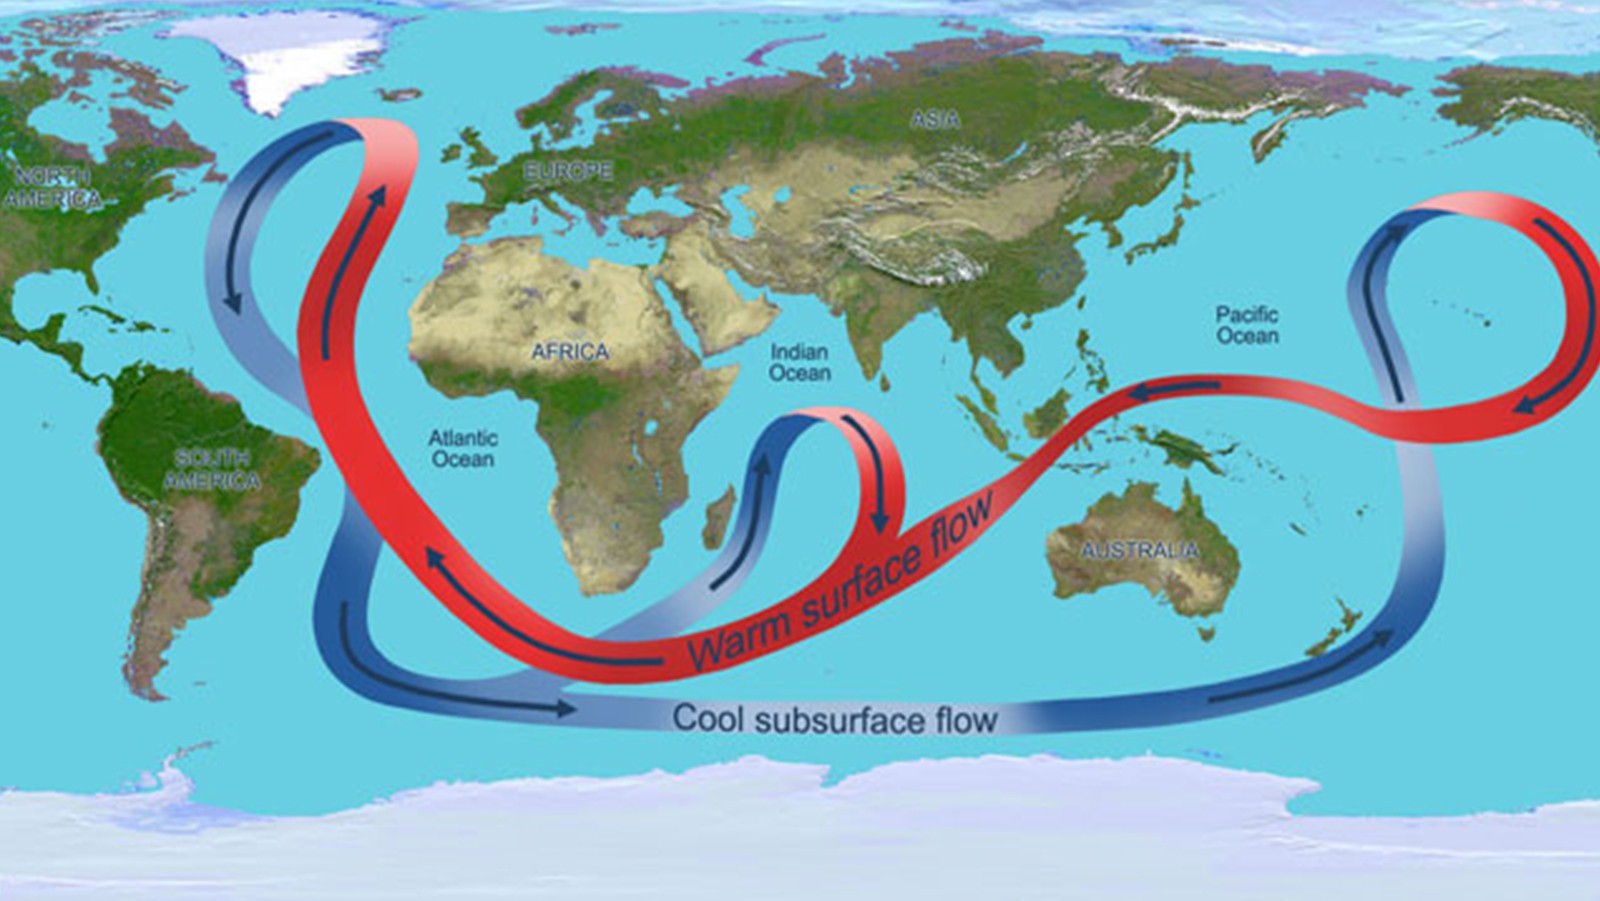 Las corrientes oceánicas distribuyen también el calor a través del mundo.